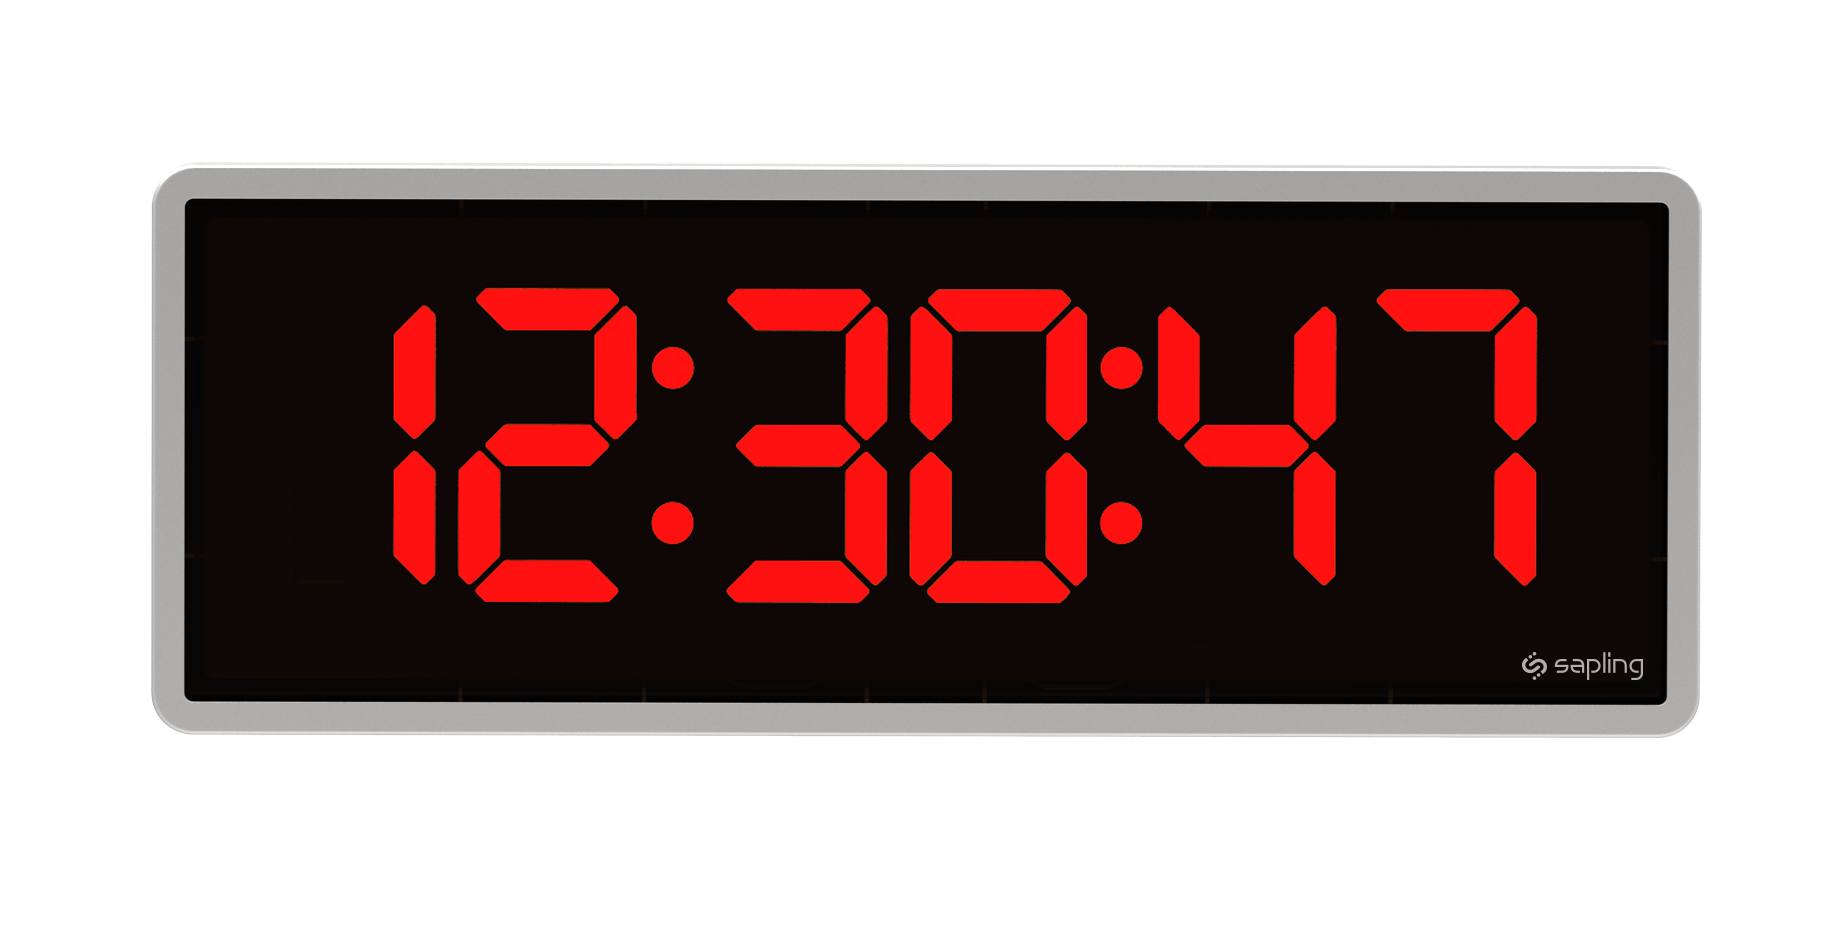 Таймер диджитал. Часы Digital Clock 200730138828.4. Часы настенные электронные. Цифровые часы. Электронное время с секундами